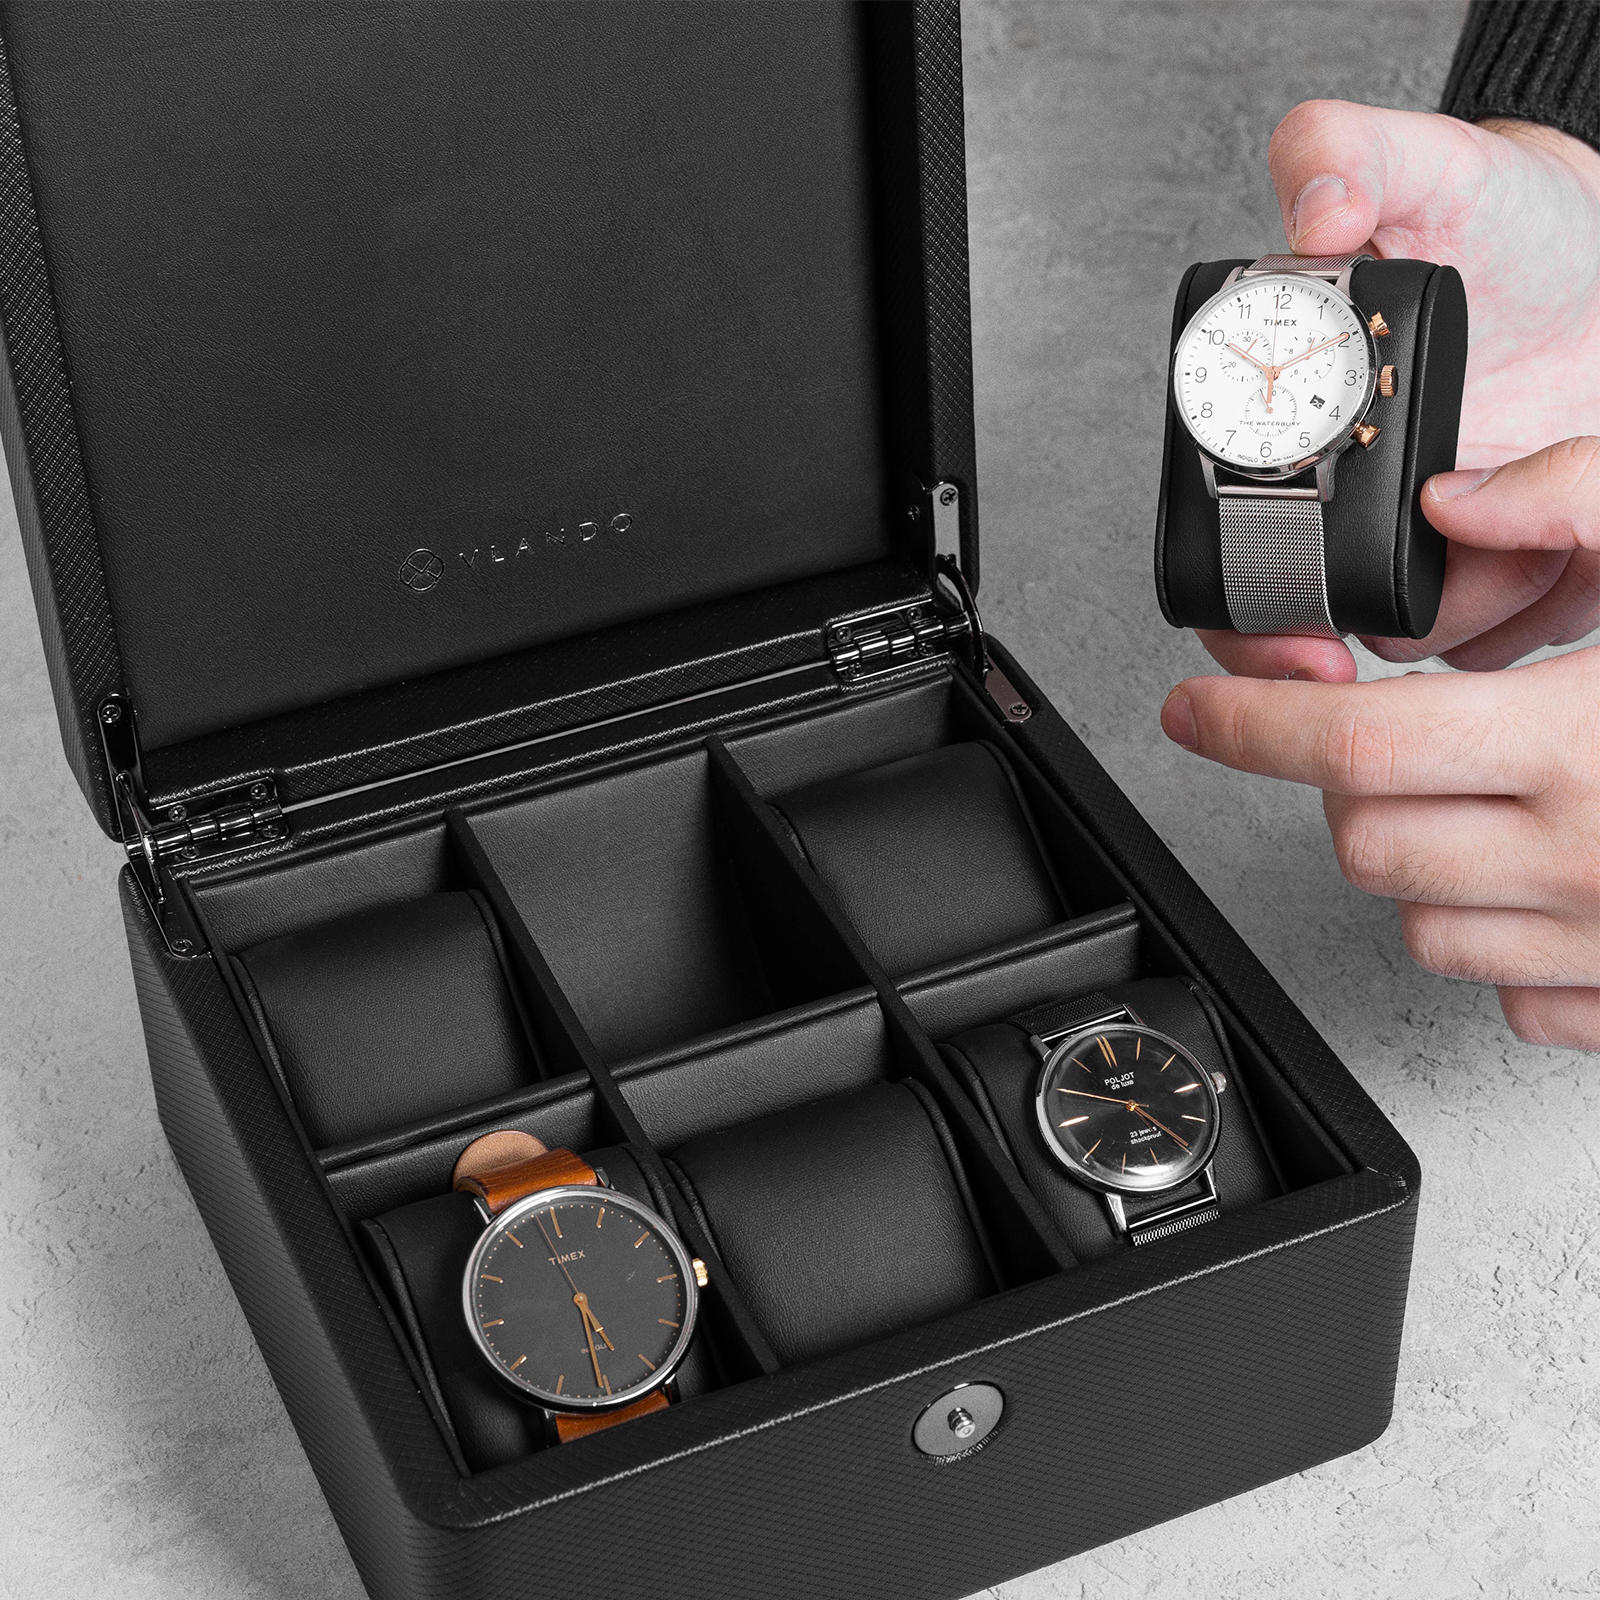 Volta Black Leather Watch Box & Jewelry Storage Box – Watch Box Co.